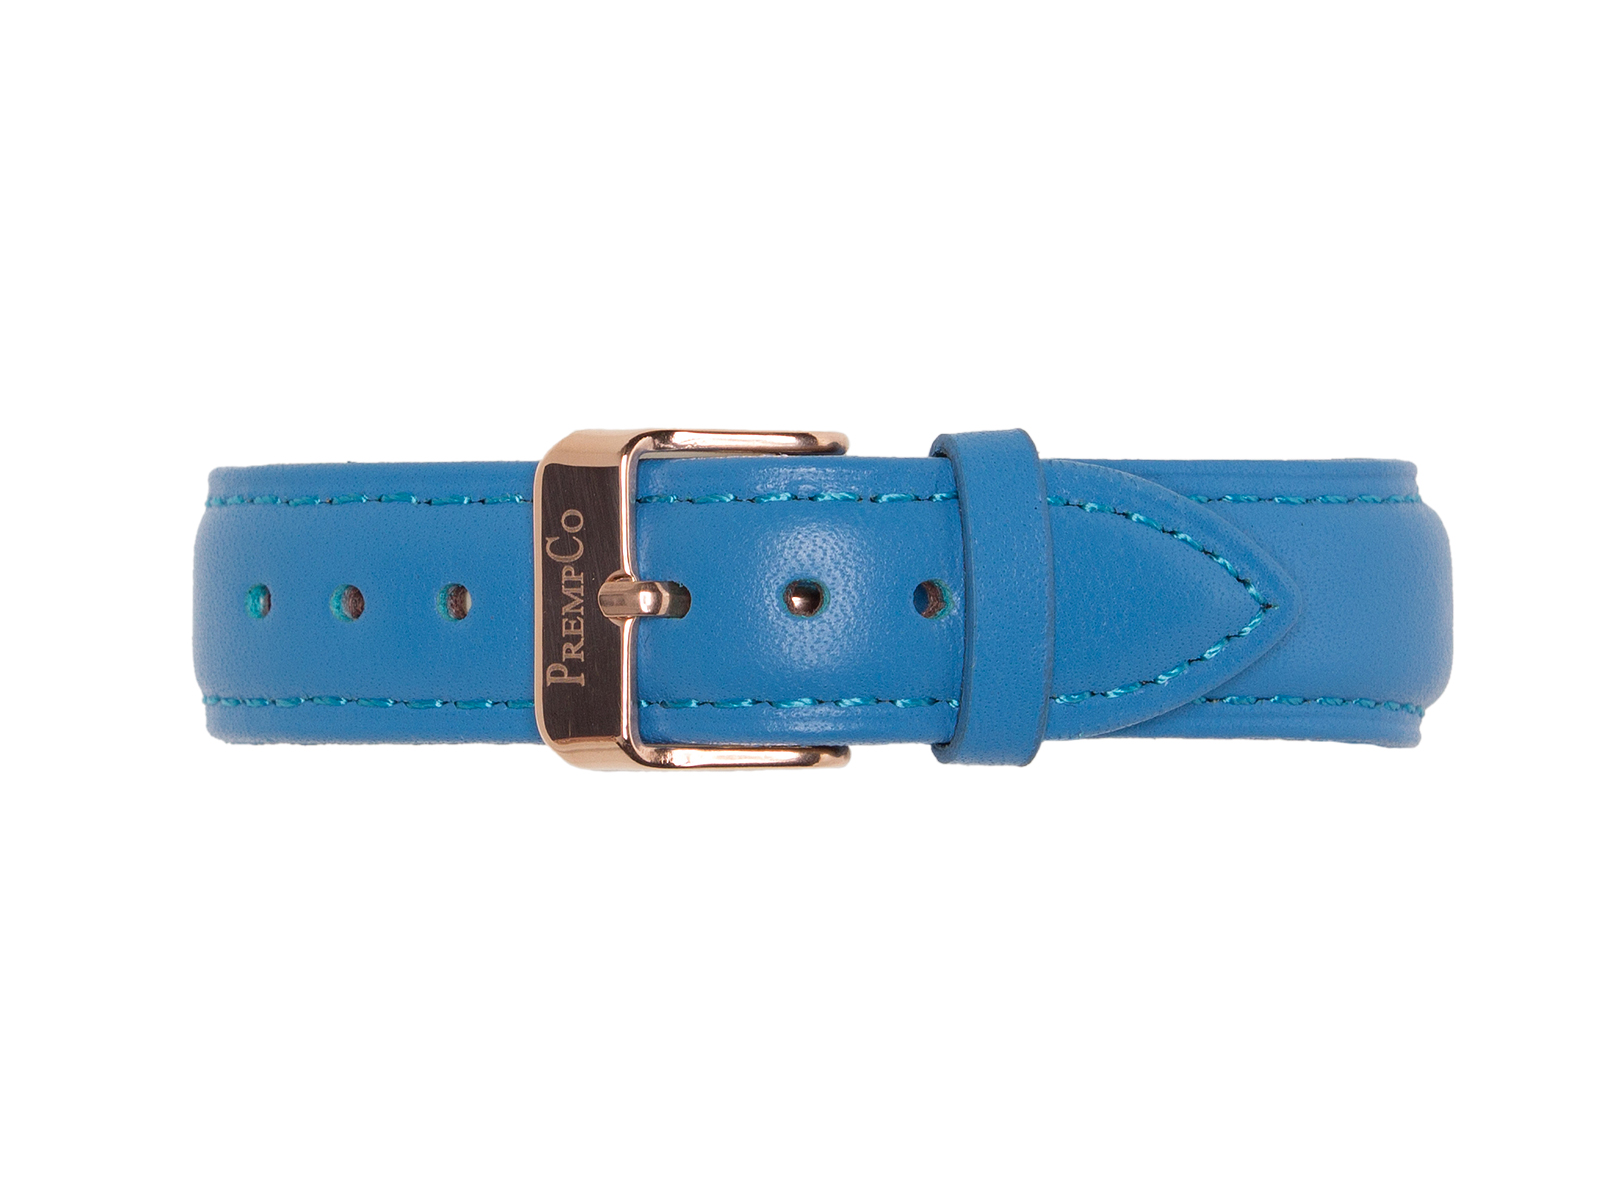 Blaues Schnellwechselband PrempCo Leder Uhrenband Uhrenarmband Schnellwechseluhrenband schnellwechseluhrenarmband